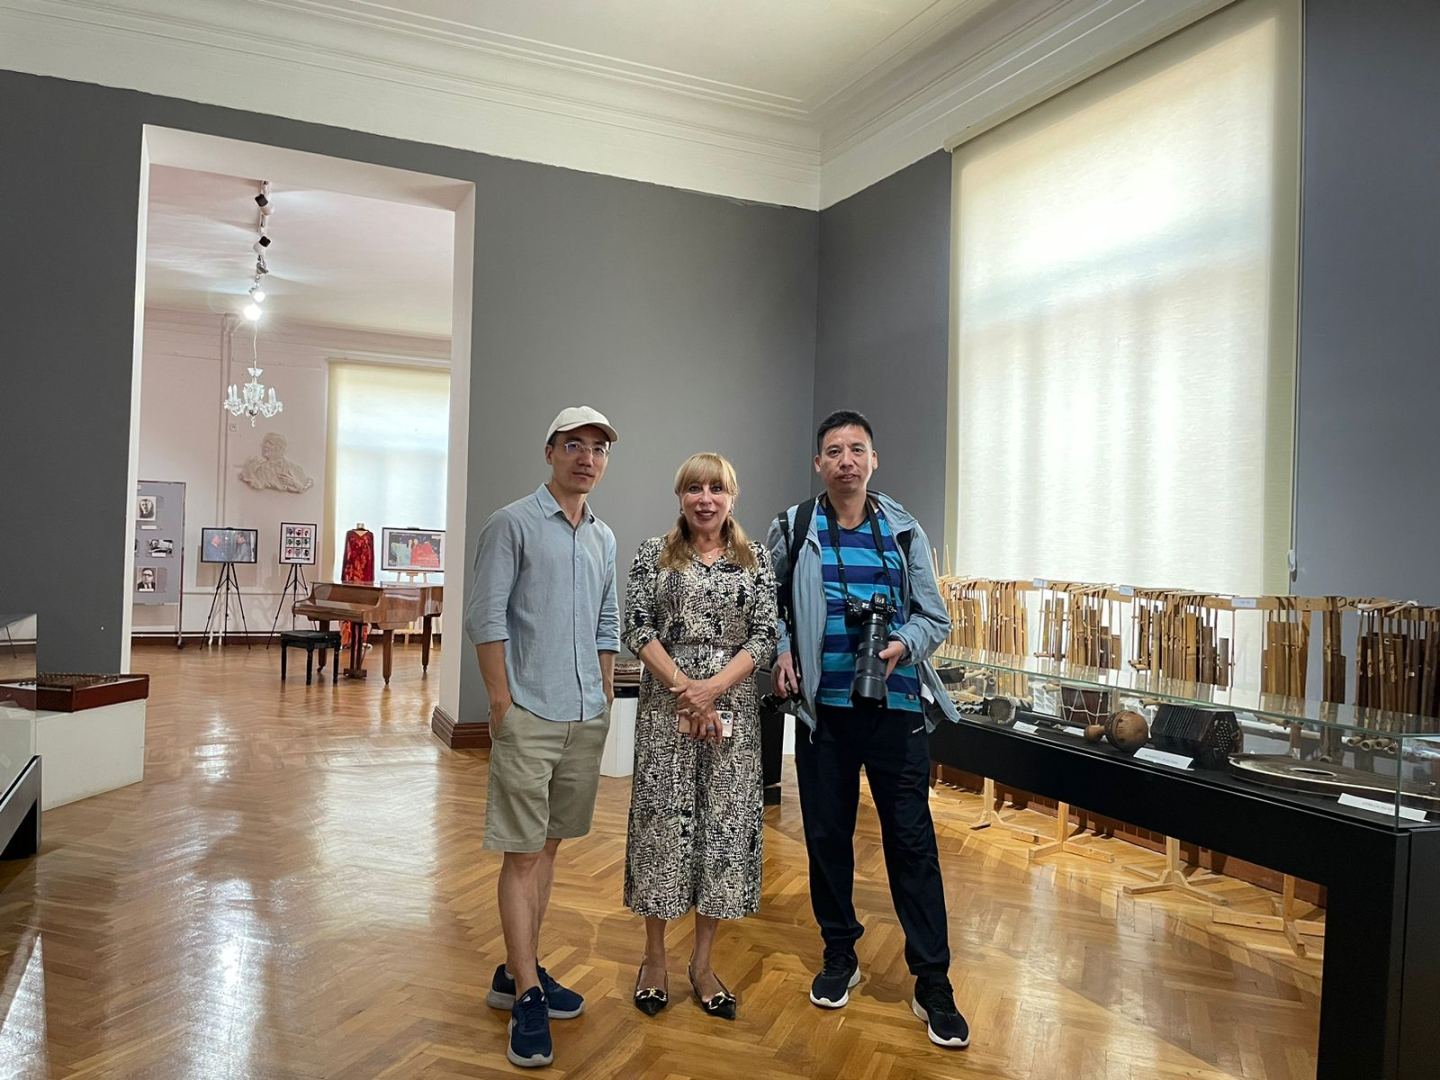 Азербайджанский музей передал консерватории в Китае издания о национальной музыке (ФОТО)